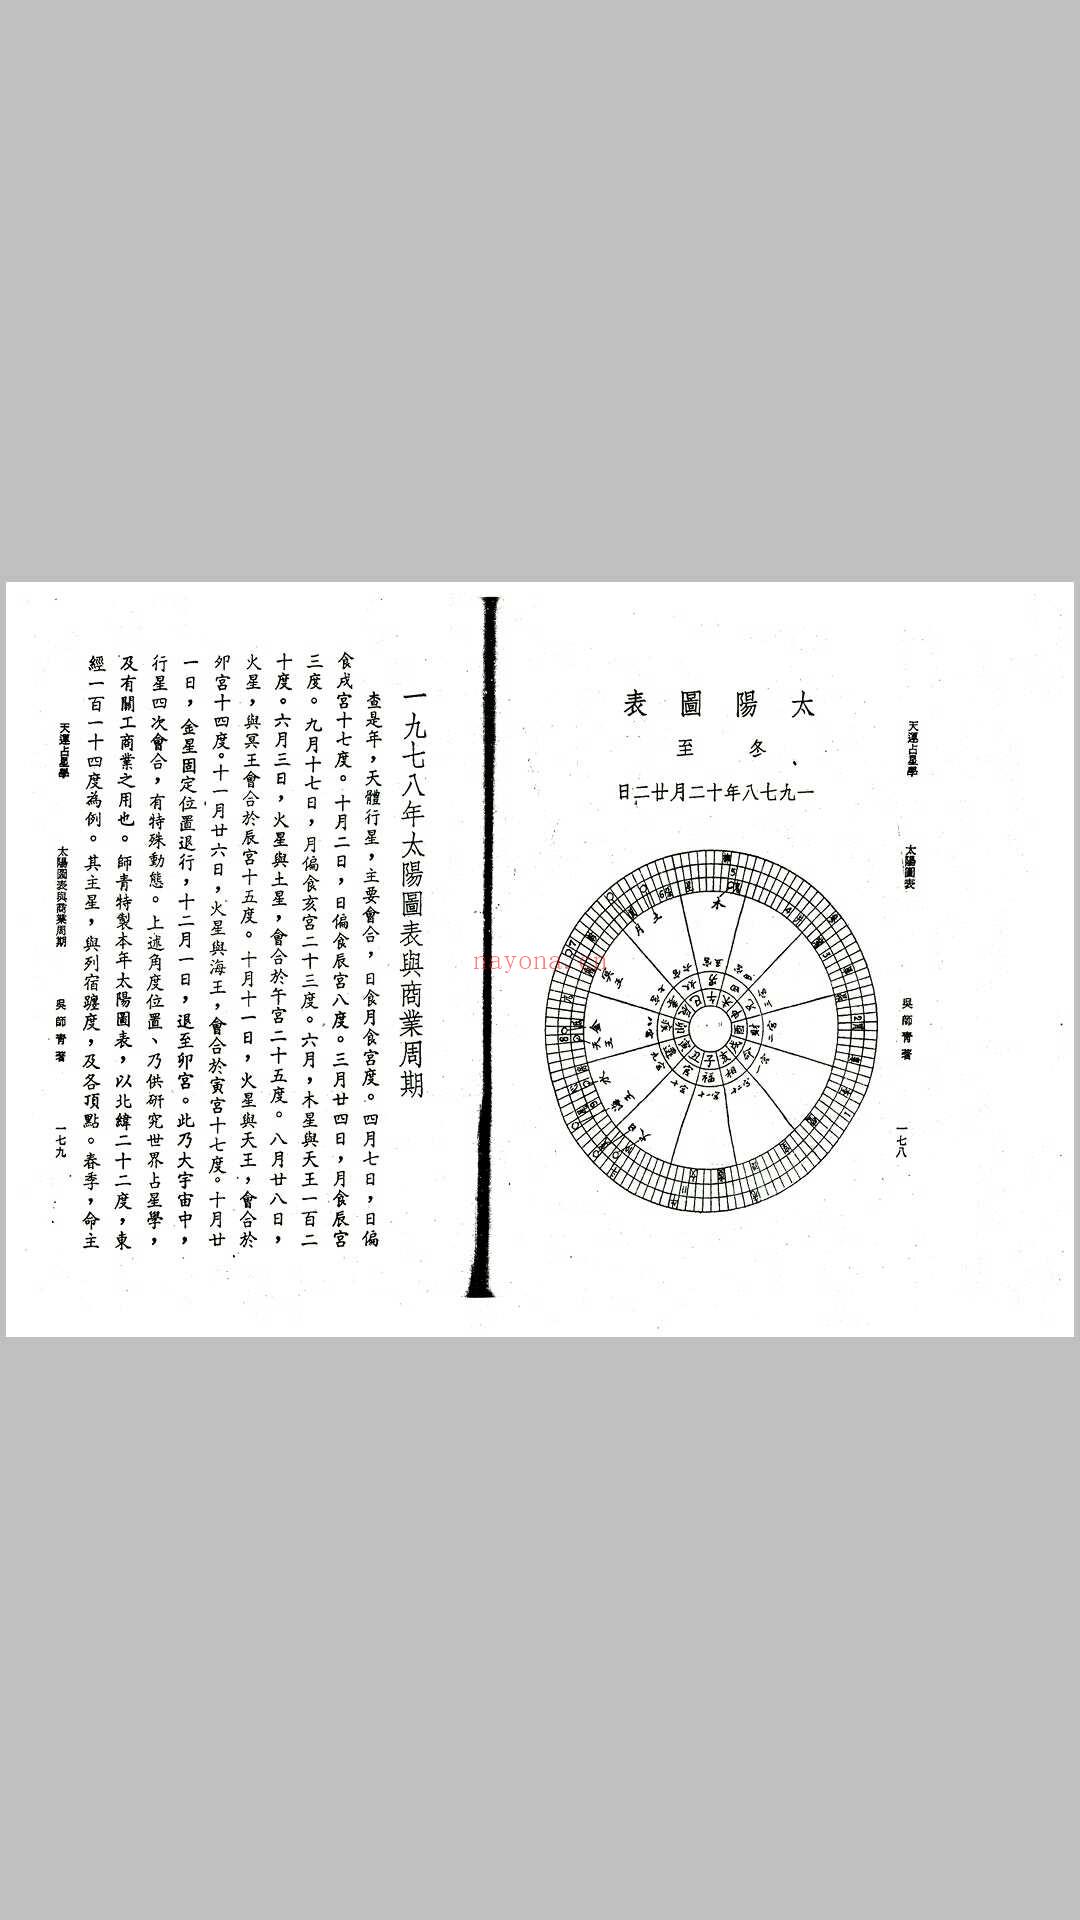 吴师青-天运占星学 (吴师青天运占星学占星案例)